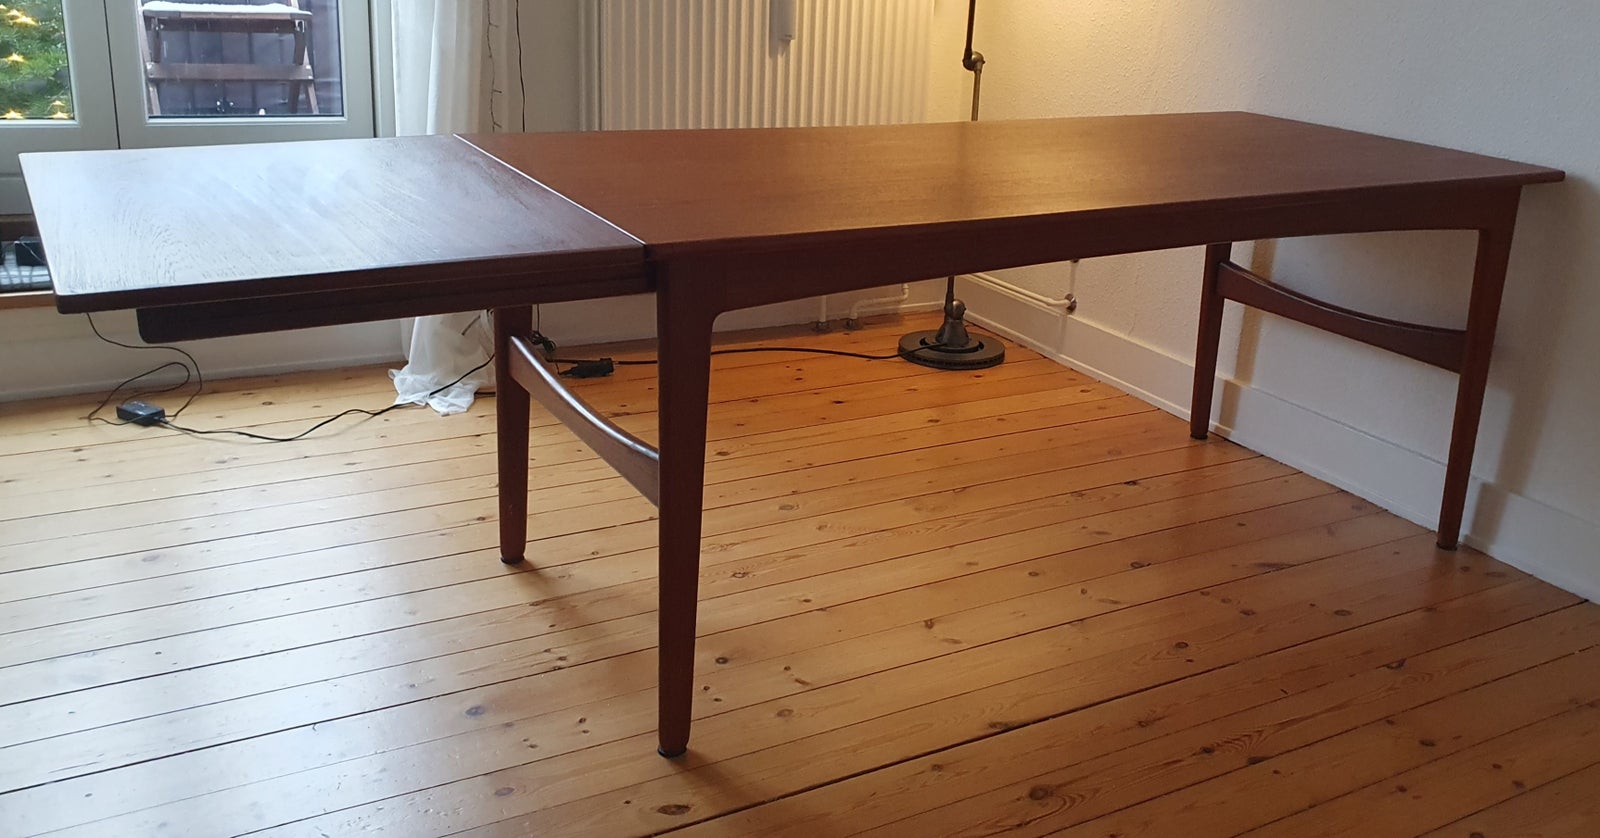 Spisebord, Teaktræ, Knud Andersen